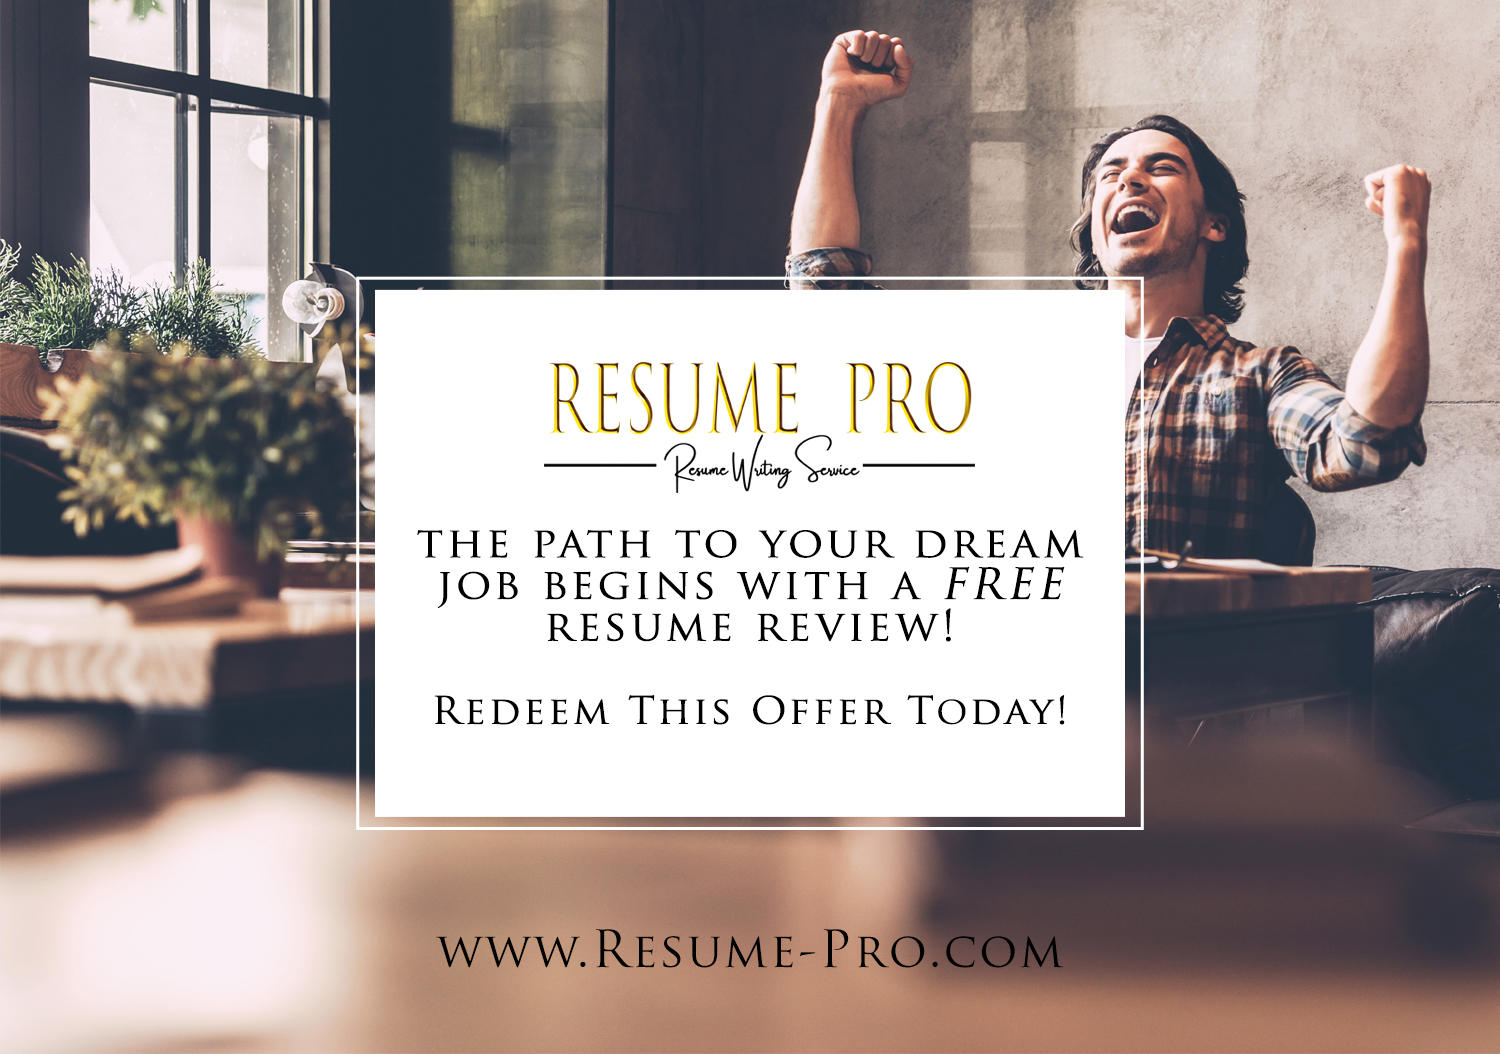 Image 4 | Resume-Pro Resume Writing Service